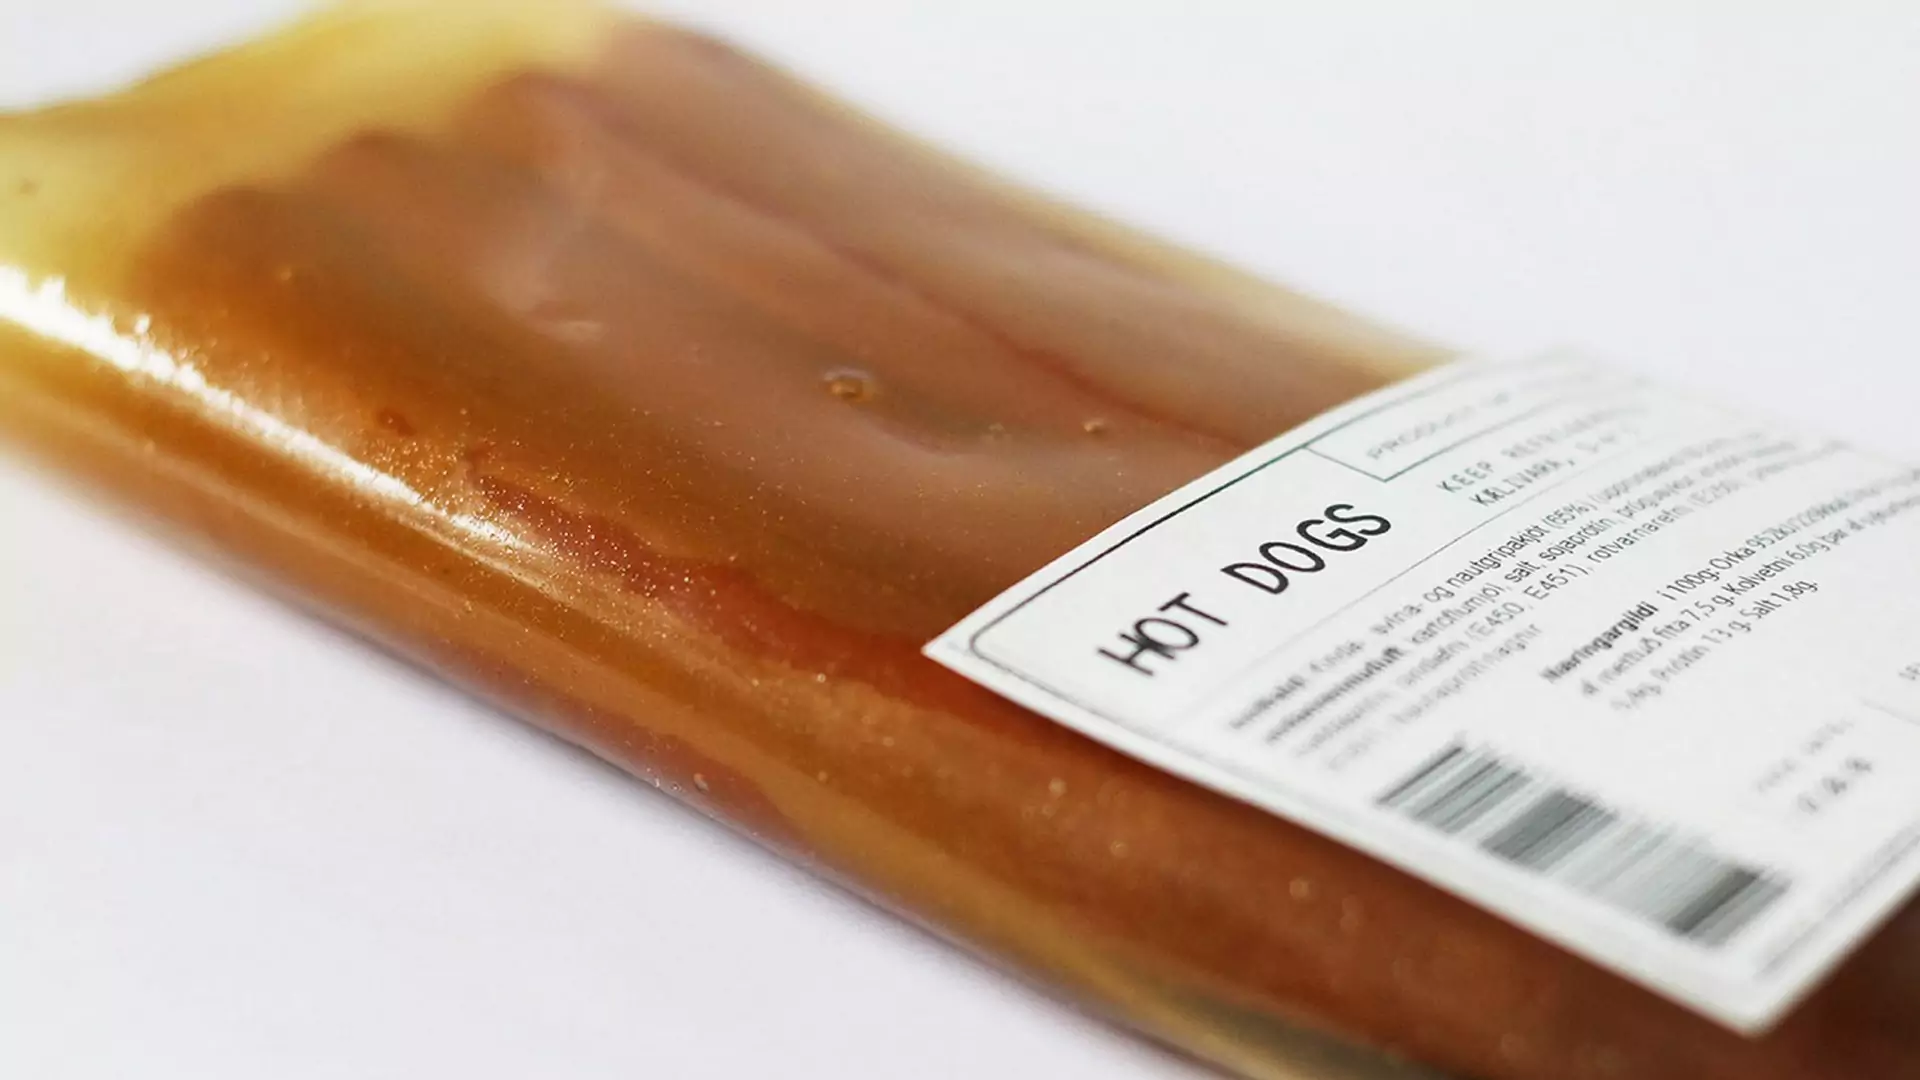 Mięso zapakowane w mięso. Stworzono bioplastik do pakowania jedzenia